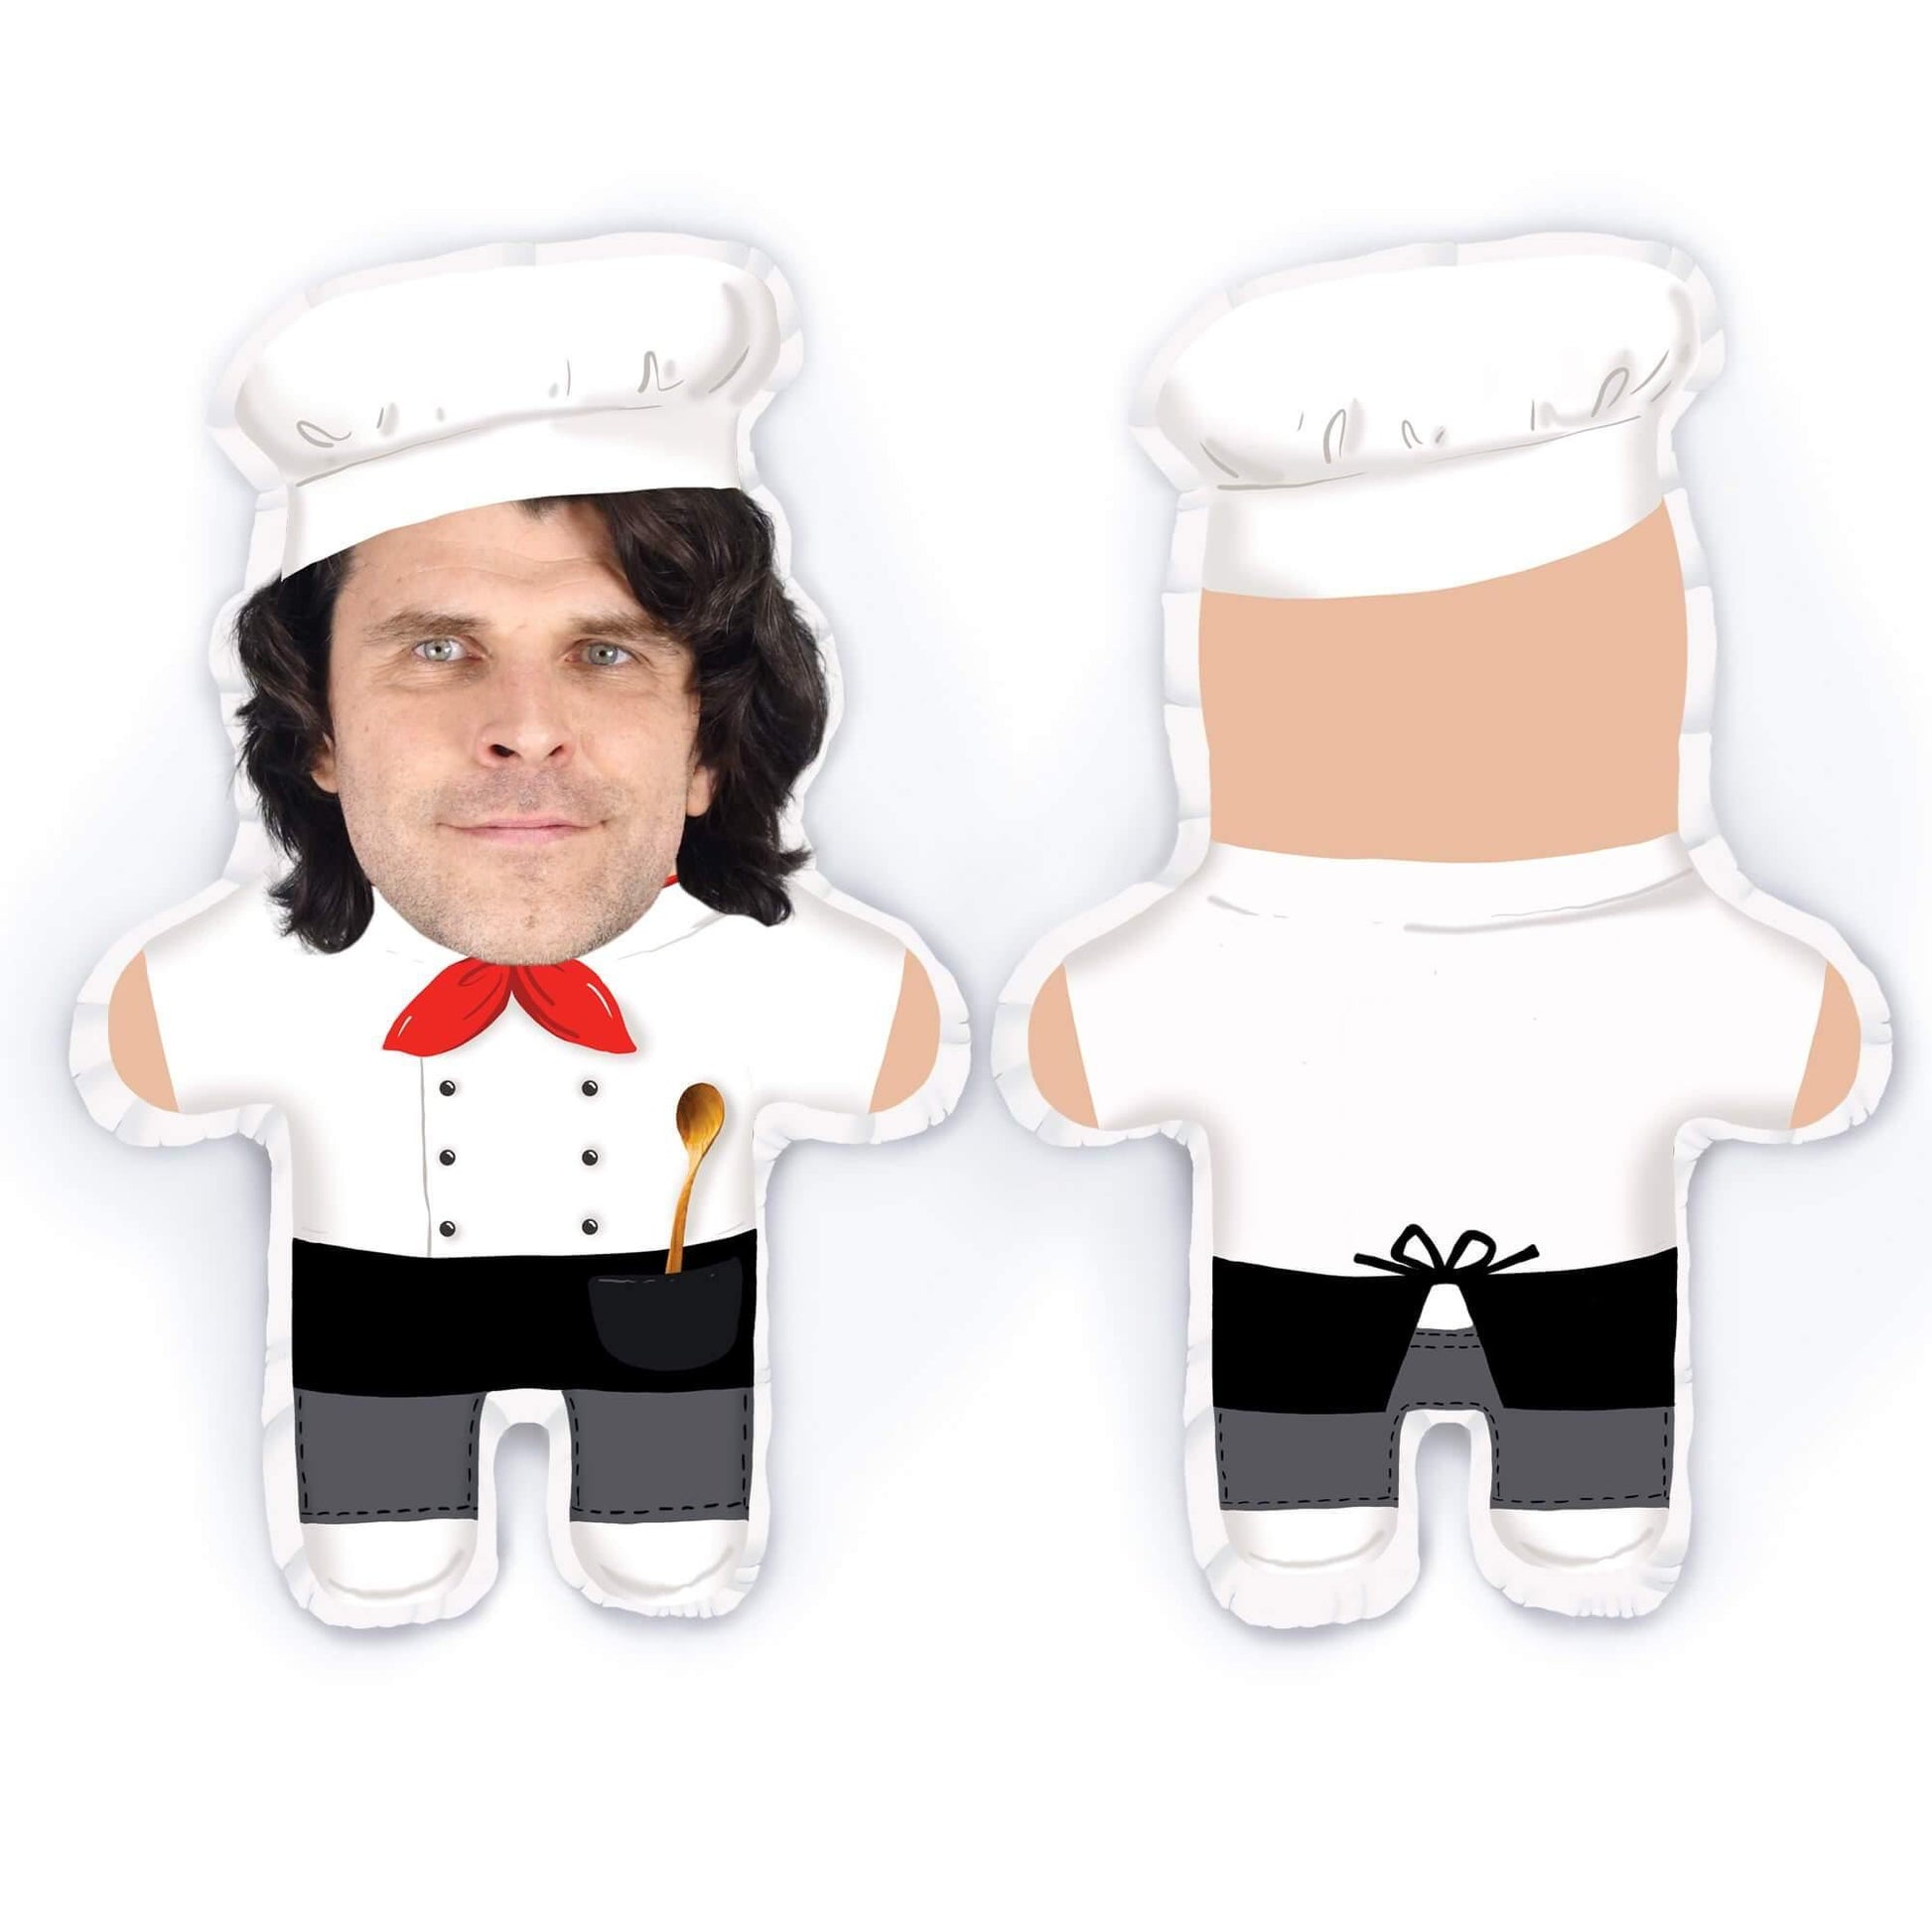 Personalisierbare Mini Me Doll Chefkoch - Dein Lieblingskissen - Personalisierte Formkissen